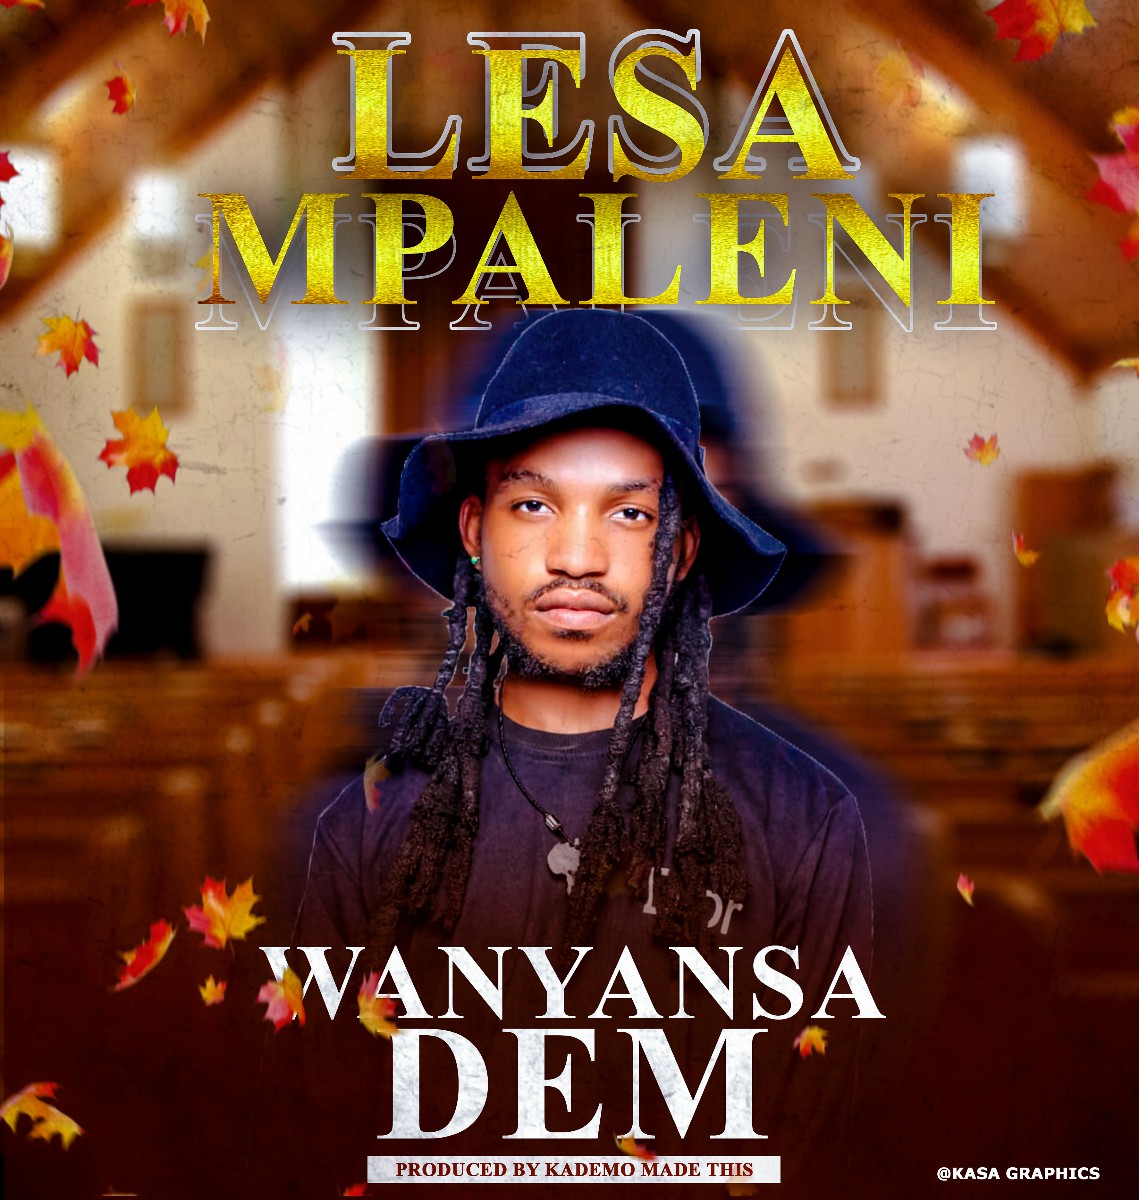 Wanyansa Dem - Lesa Mpaleni (Prod. Kademo)